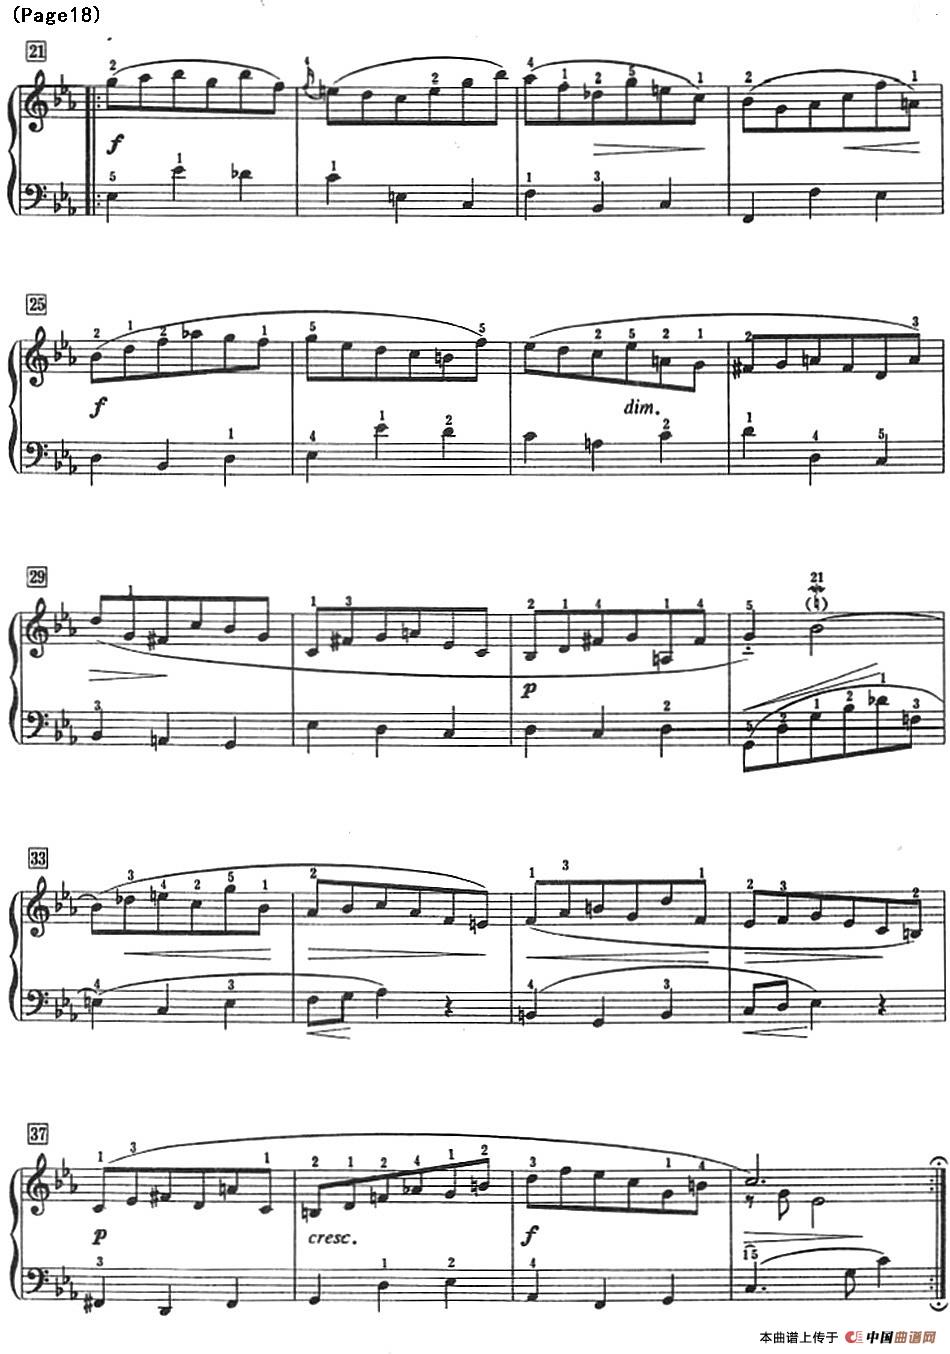 巴赫小前奏曲（NO.13-NO.16）(1)_Bach Little Prelude and Fugue_页面_23.jpg